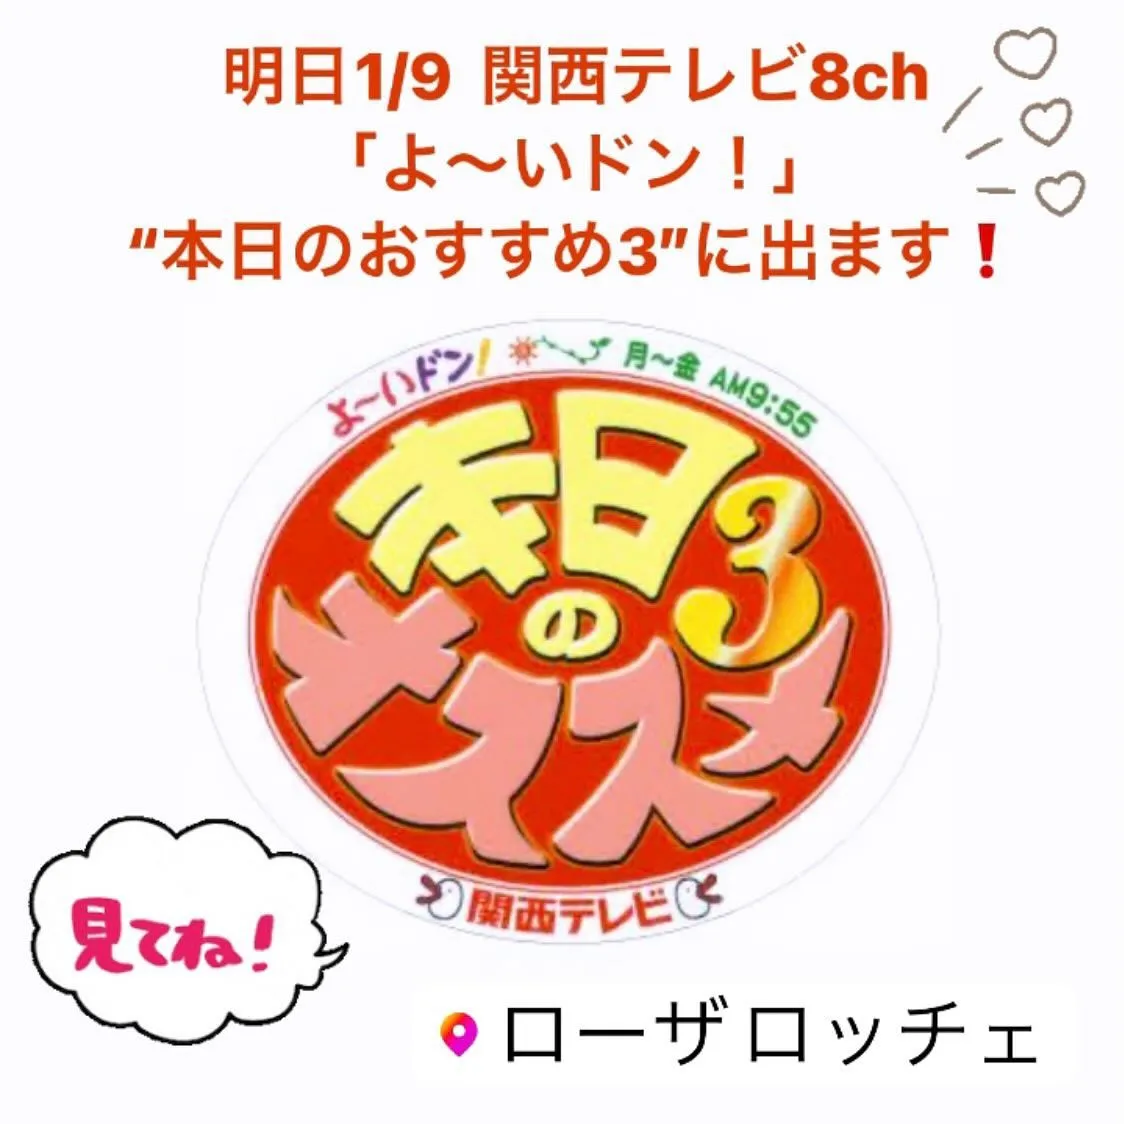 明日(今日) 1月9日午前 関西テレビ8ch